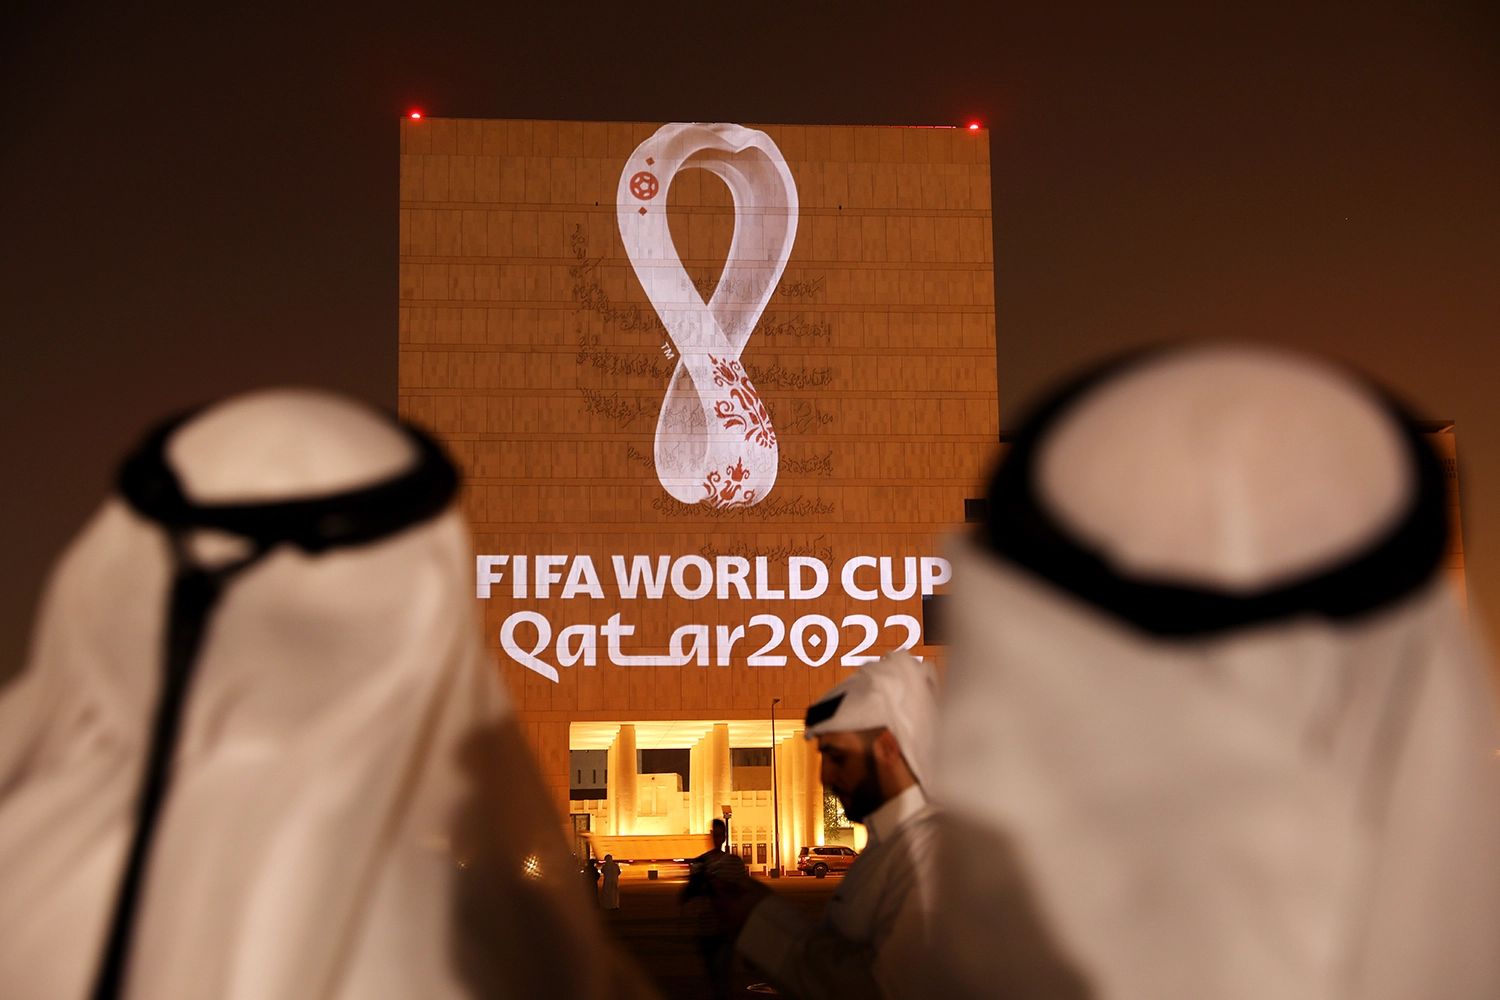 آیا جام جهانی هدر دادن پول هنگفت است؟ / به نام کشورهای میزبان به کام فیفا!